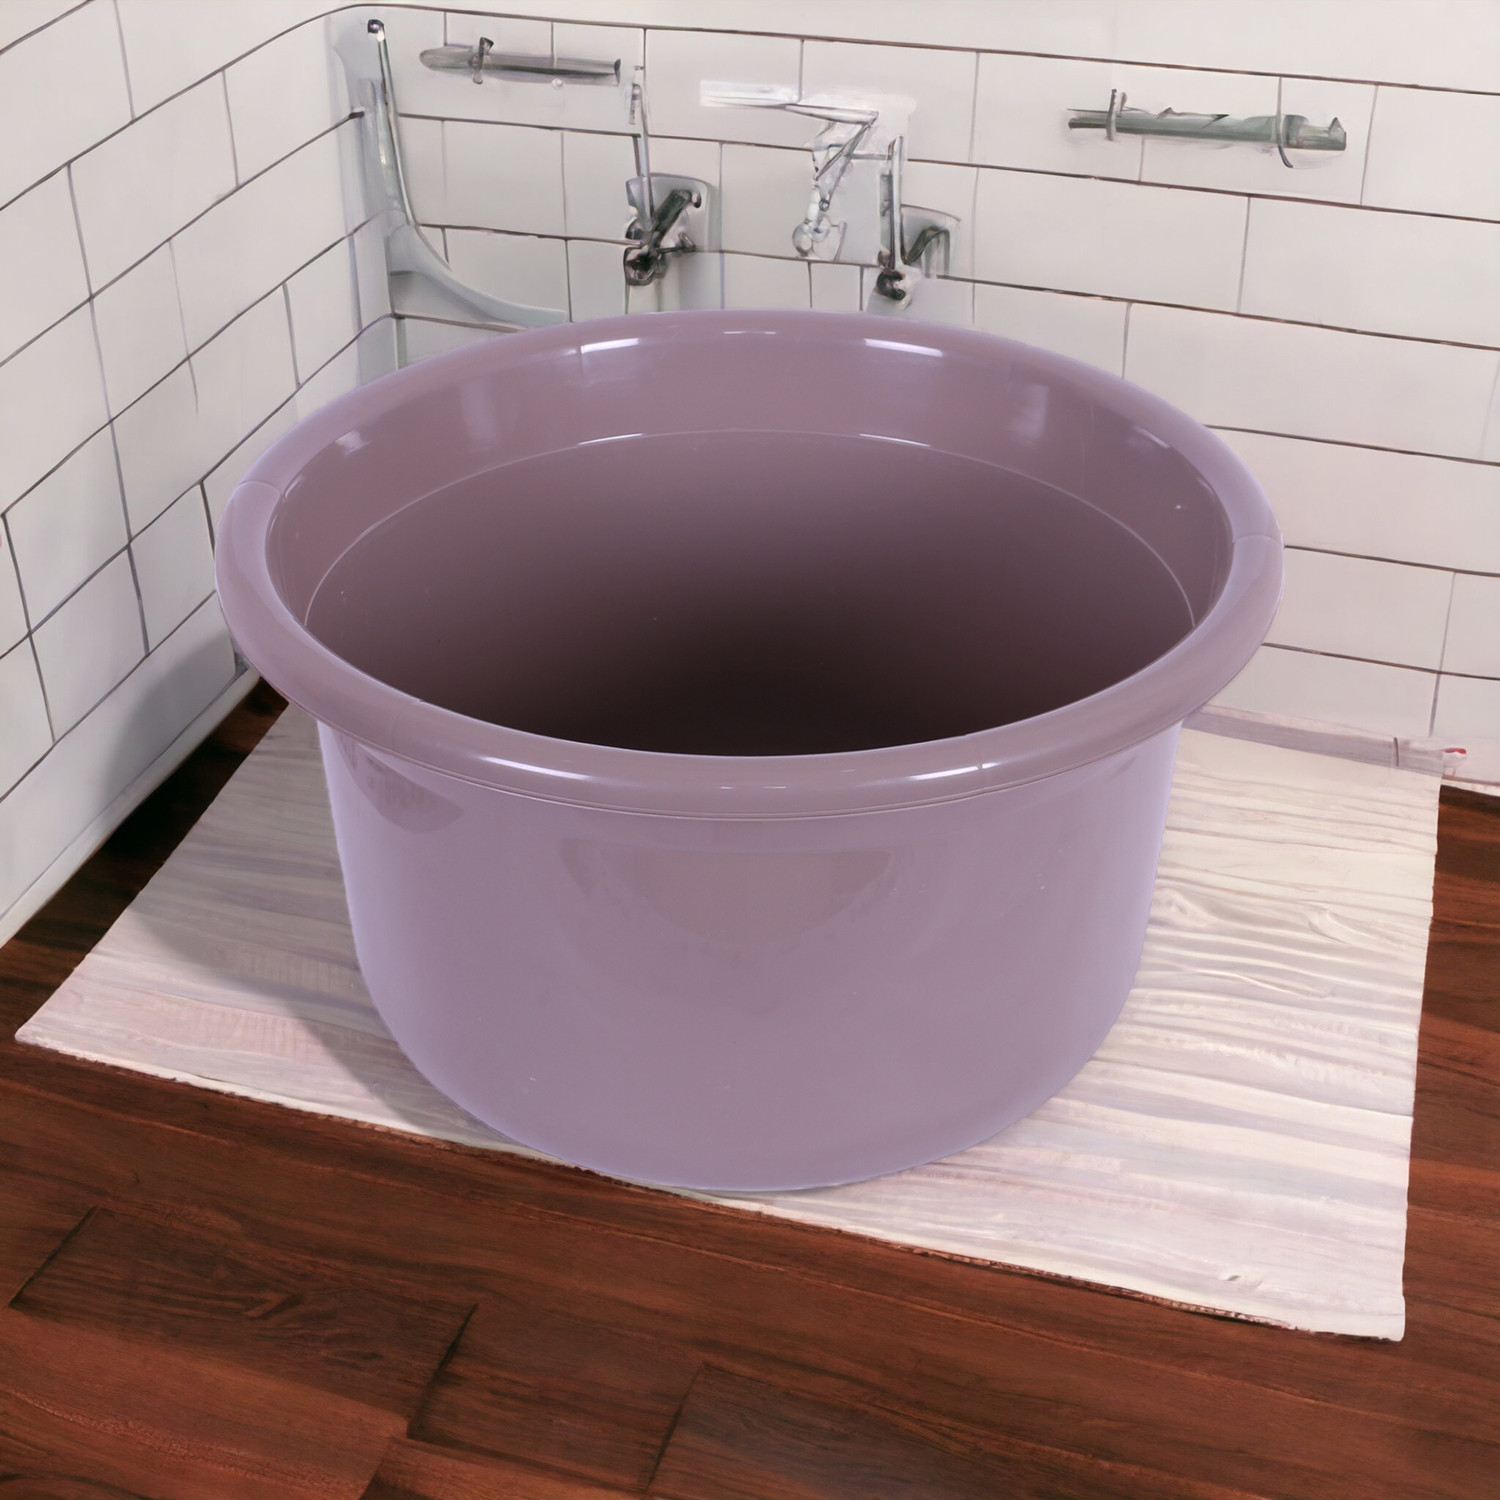 Kuber Industries Bath Tub | Versatile Utility Gaint Tub | Plastic Bath Tub for Baby | Baby Bathing Tub | Clothes Washing Tub For Bathroom | Feeding Pan Tub | TUB-25 LTR | Brown